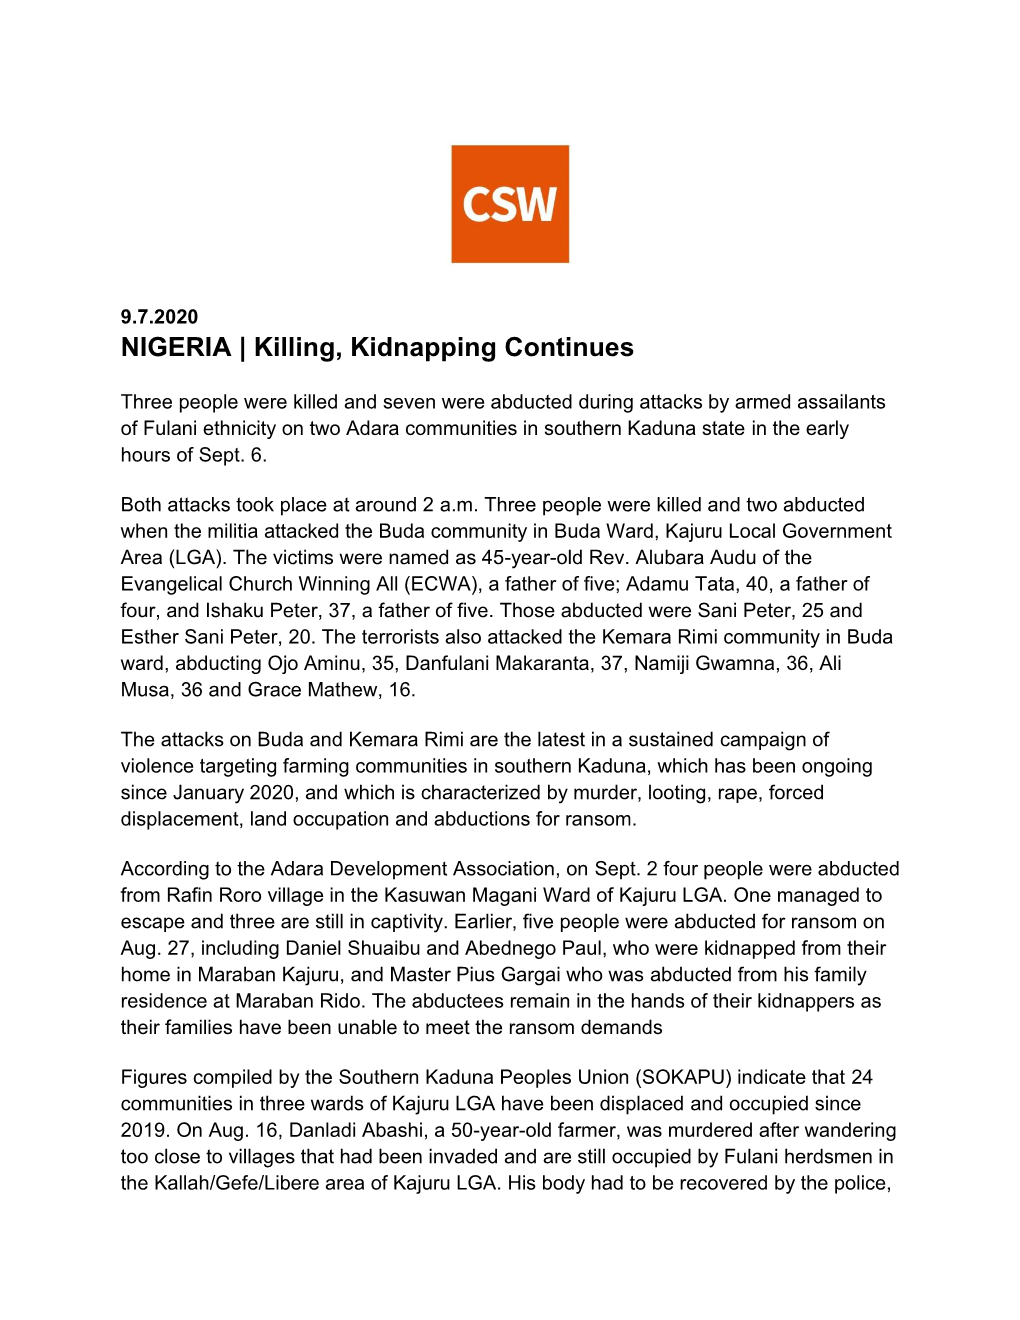 NIGERIA | Killing, Kidnapping Continues